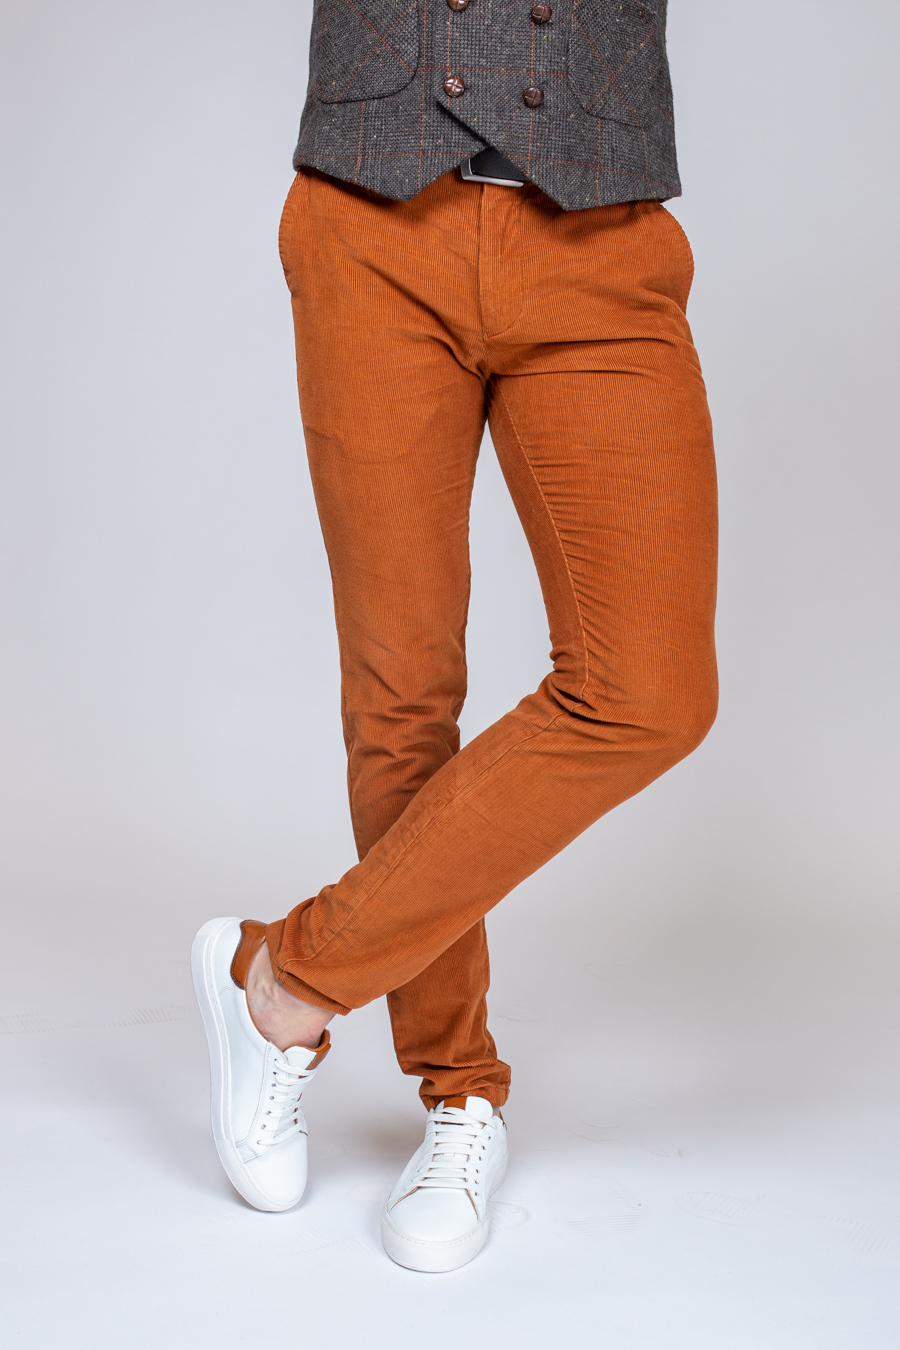 Вельветовые мужские брюки горчичного цвета. Арт.:3201 – купить в магазинемужской одежды Smartcasuals